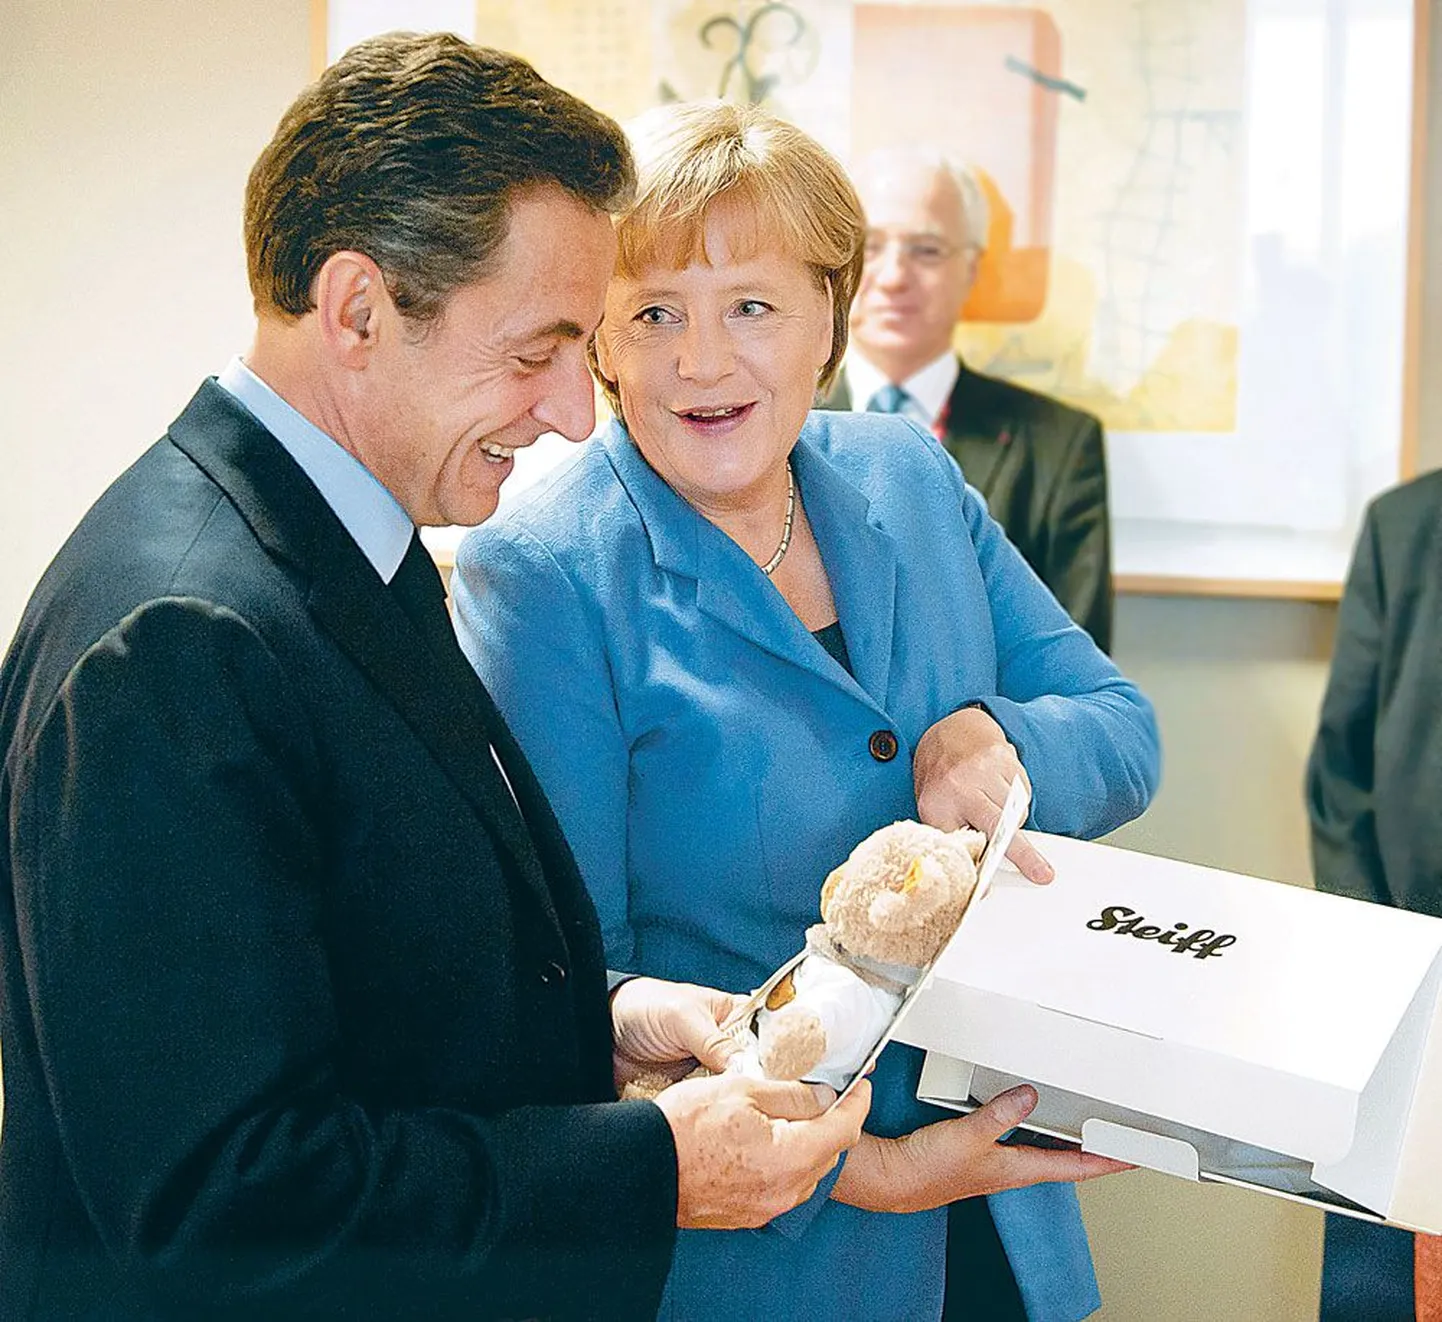 Prantsusmaa riigipea Nicolas Sarkozy ja Saksamaa kantsler Angela Merkel pühapäeval Brüsselis koos kaisukaruga, mille viimane kinkis 19. oktoobril Sarkozyde perre sündinud tütrele Giuliale. Spiegel ironiseeris, et kaisukaru oli ainus pühapäeval toimunud kõneluste käegakatsutav tagajärg, euroala võlakriisi läbirääkimiste käiku nimetas ajakiri piinarikkaks.